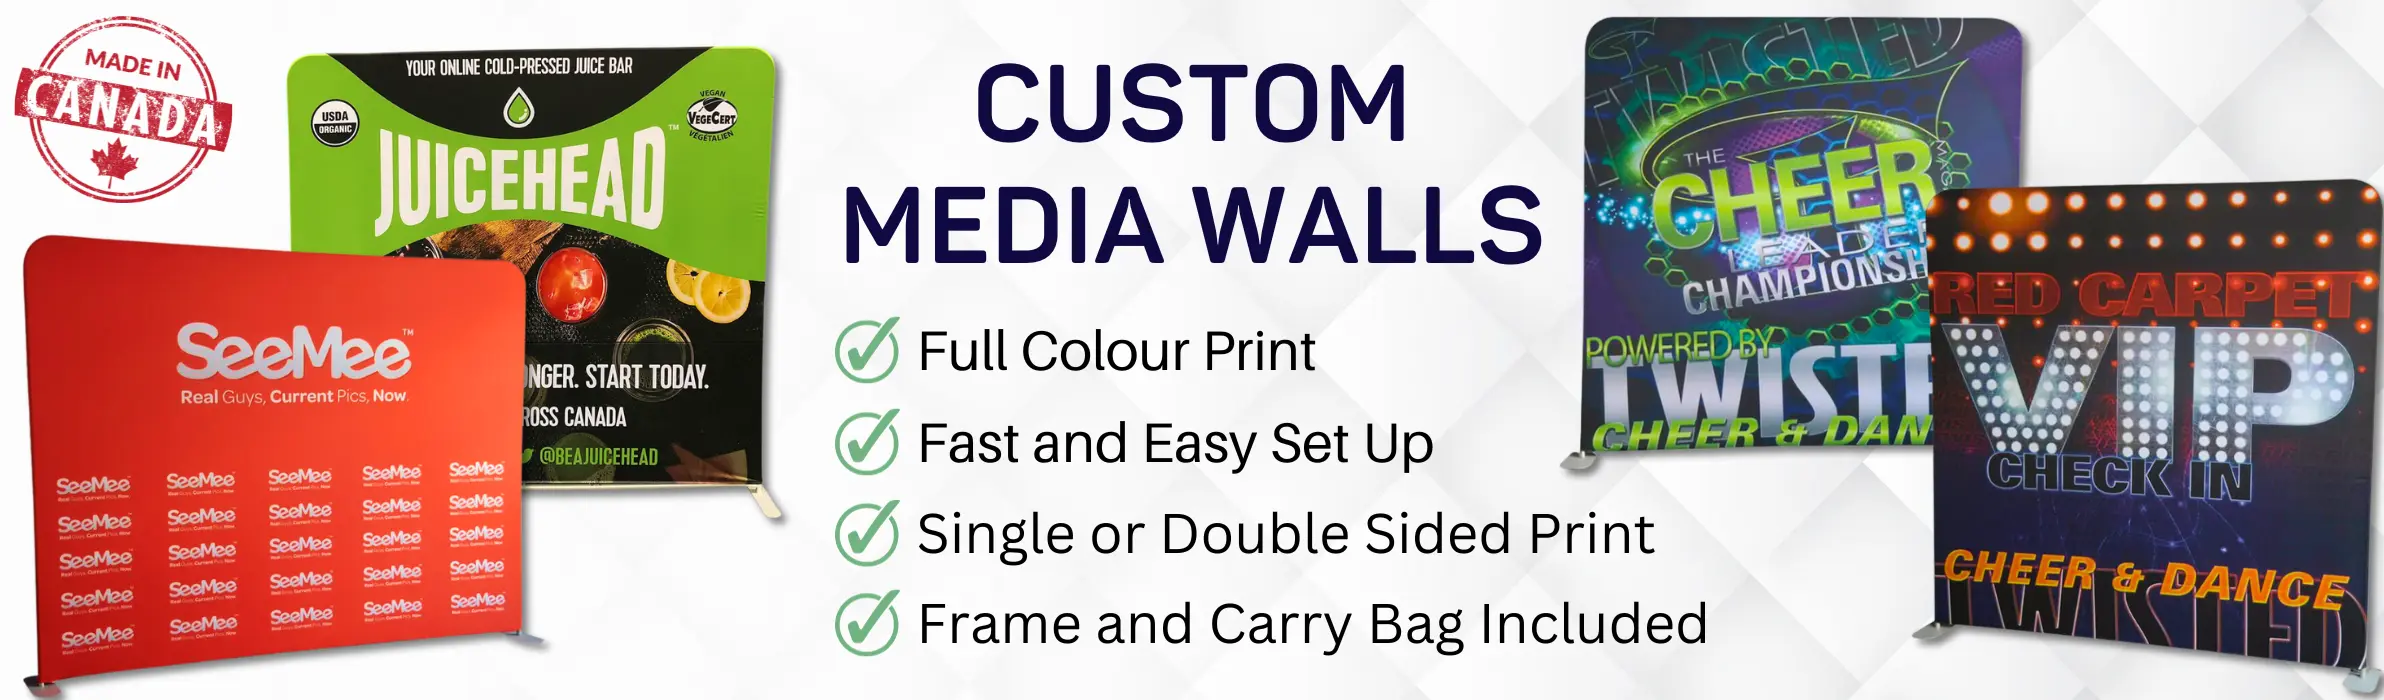 Custom Media Walls